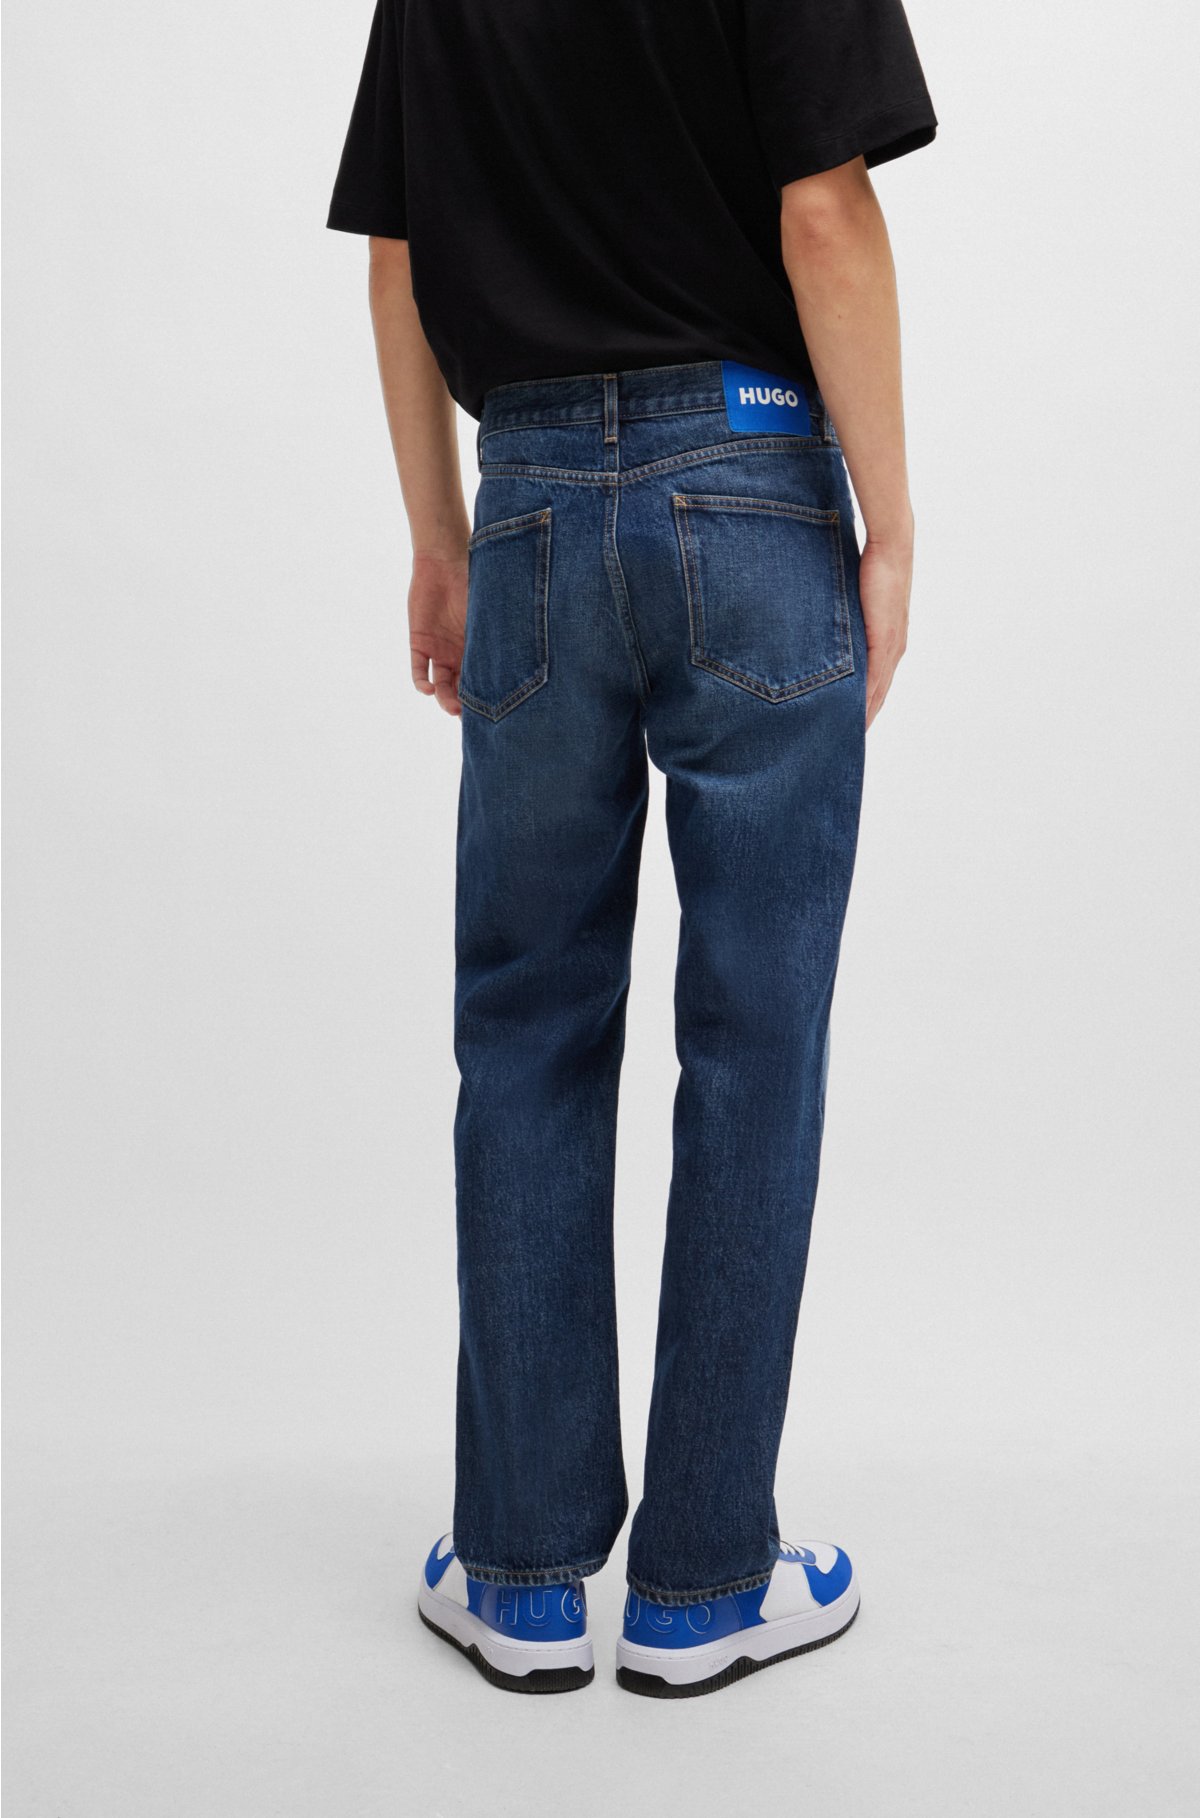 Regular-fit jeans in navy stonewashed denim, Dark Blue